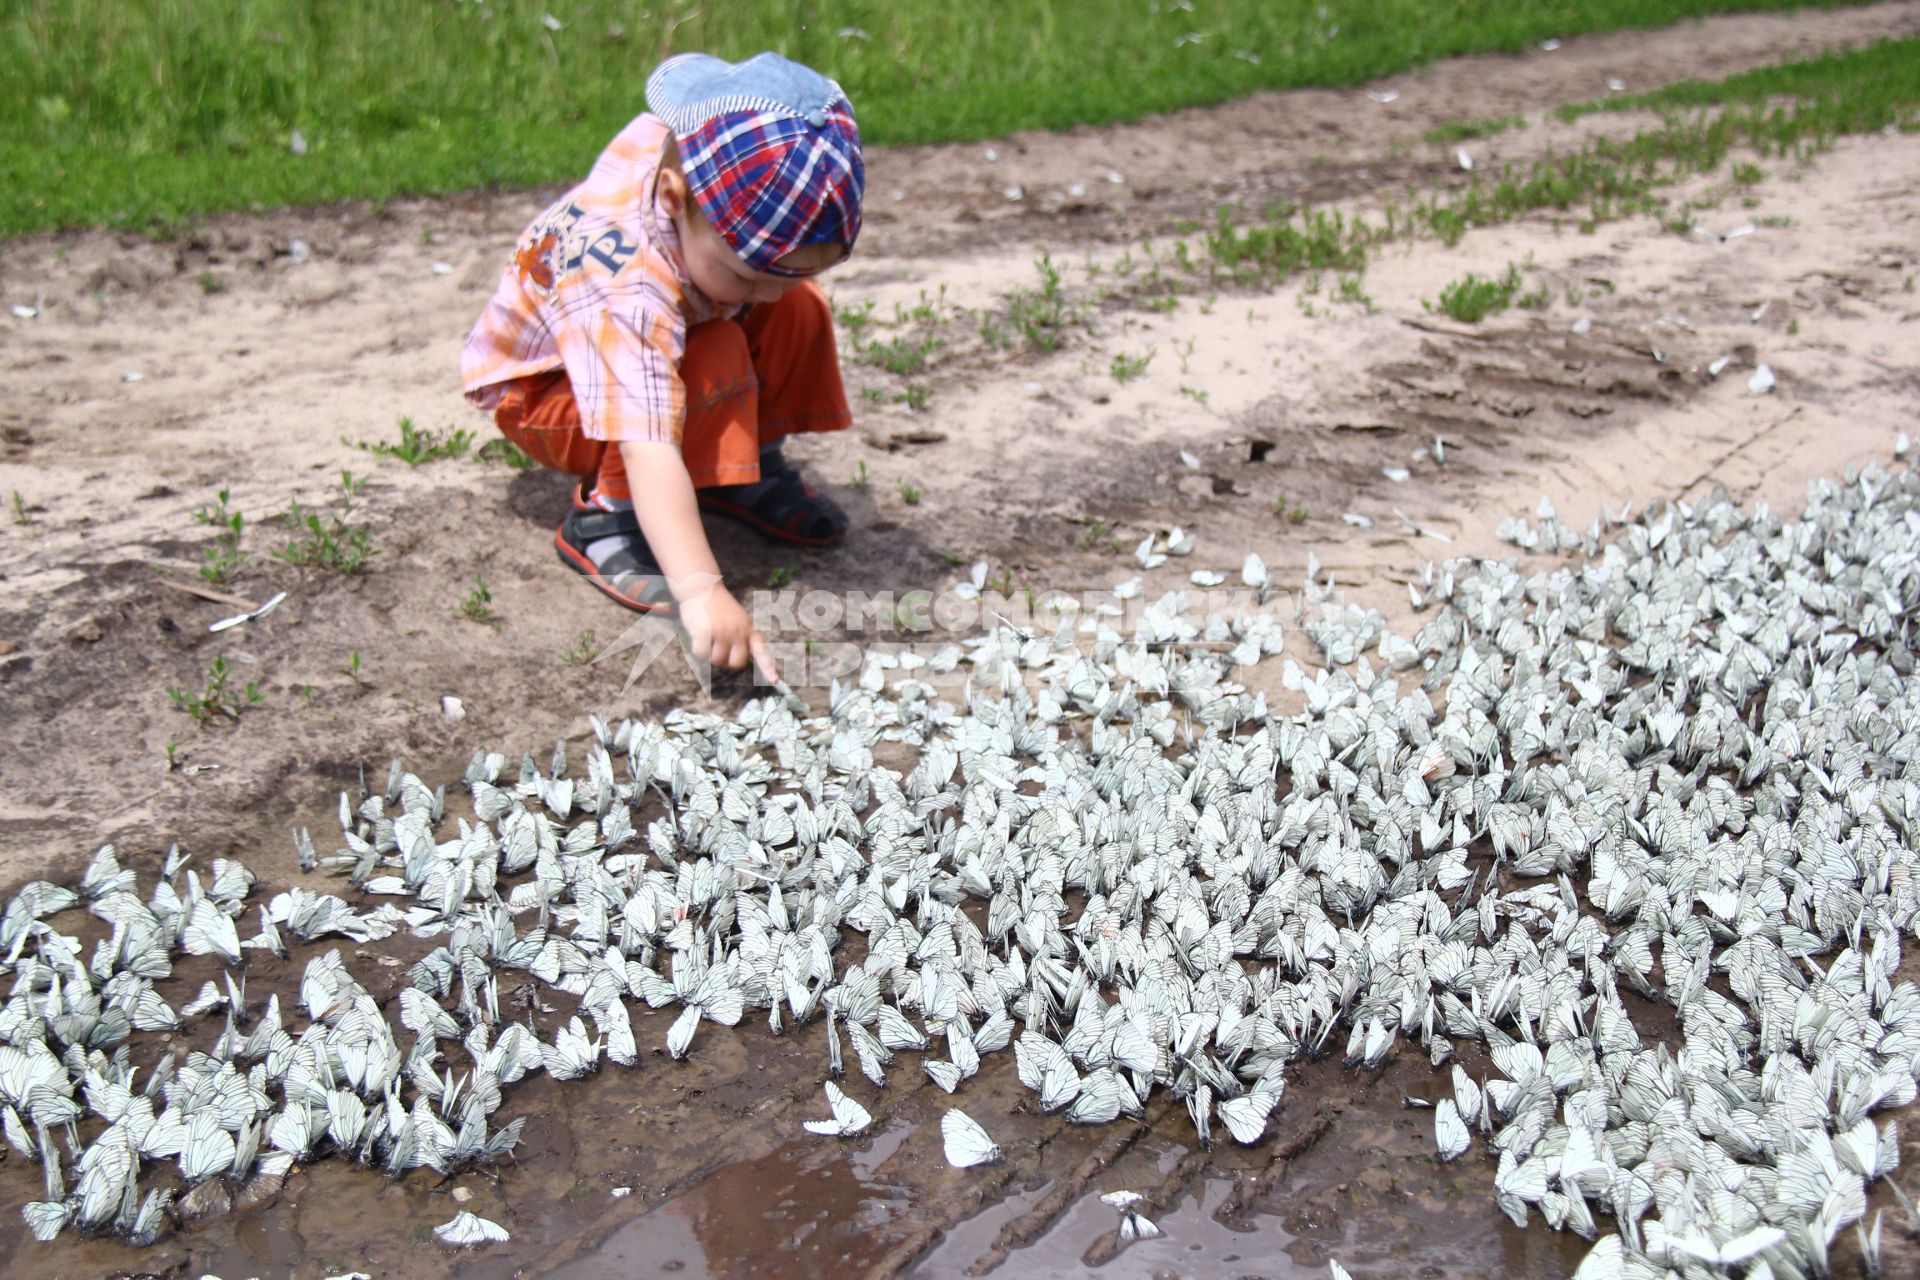 Нашествие бабочек. Село Чернуха, Нижегородская область. Ребенок трогает бабочек.